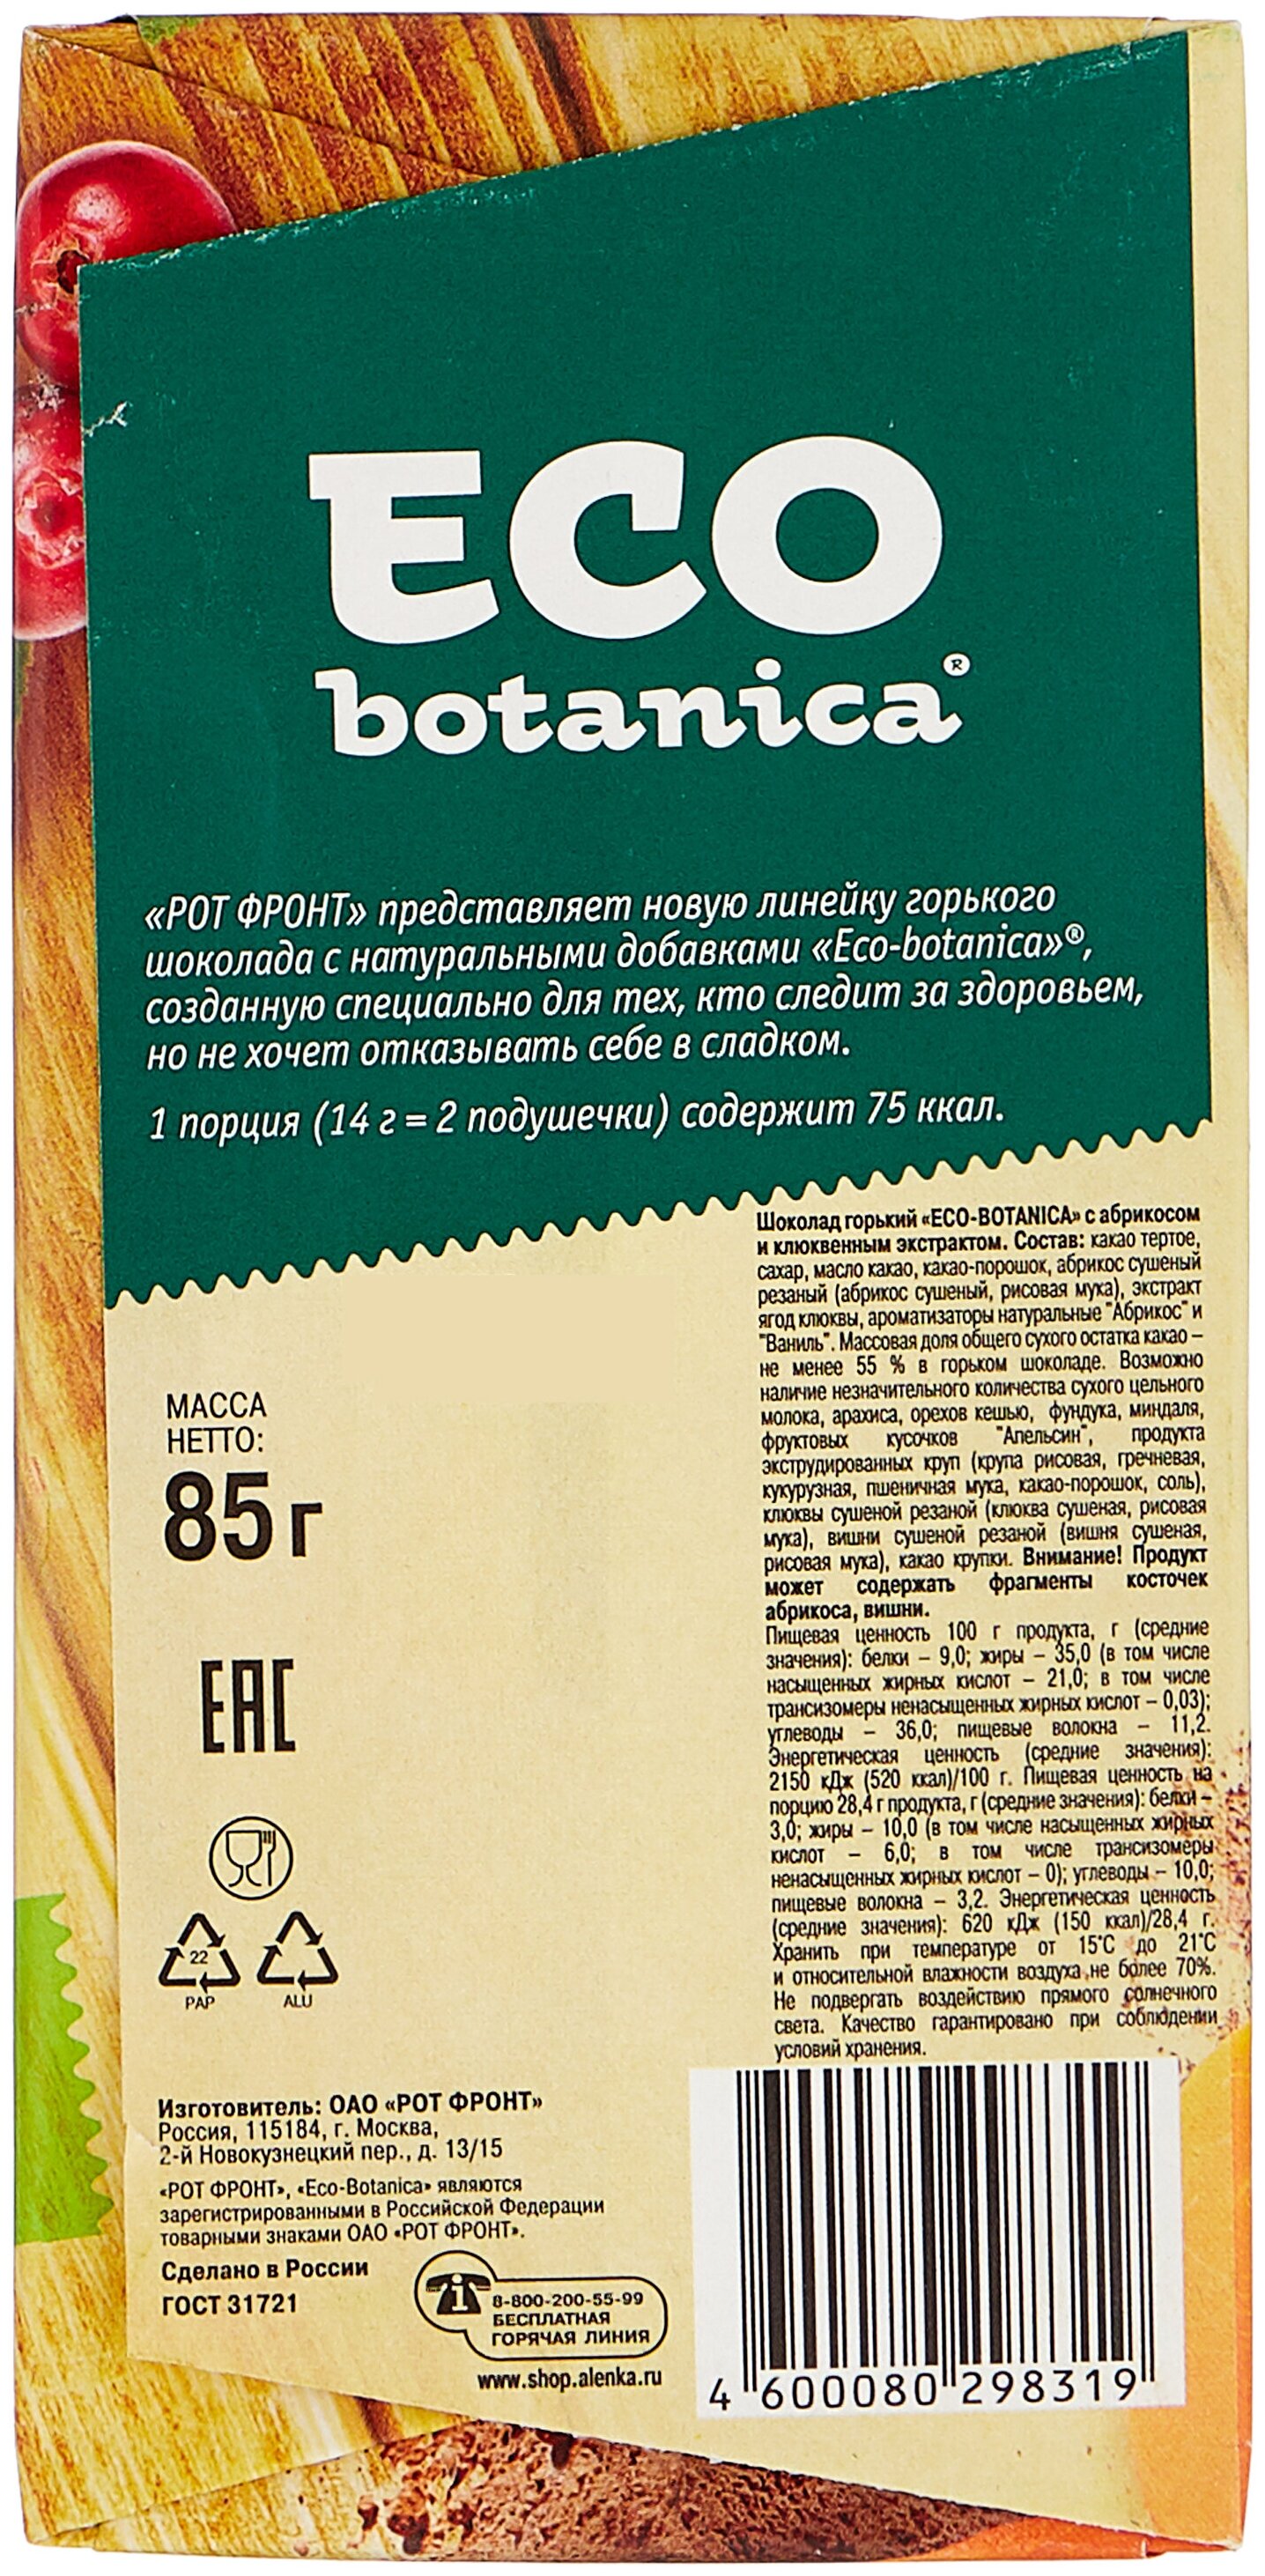 Eco botanica "С абрикосом и клюквенным экстрактом" - добавки: клюква, абрикос